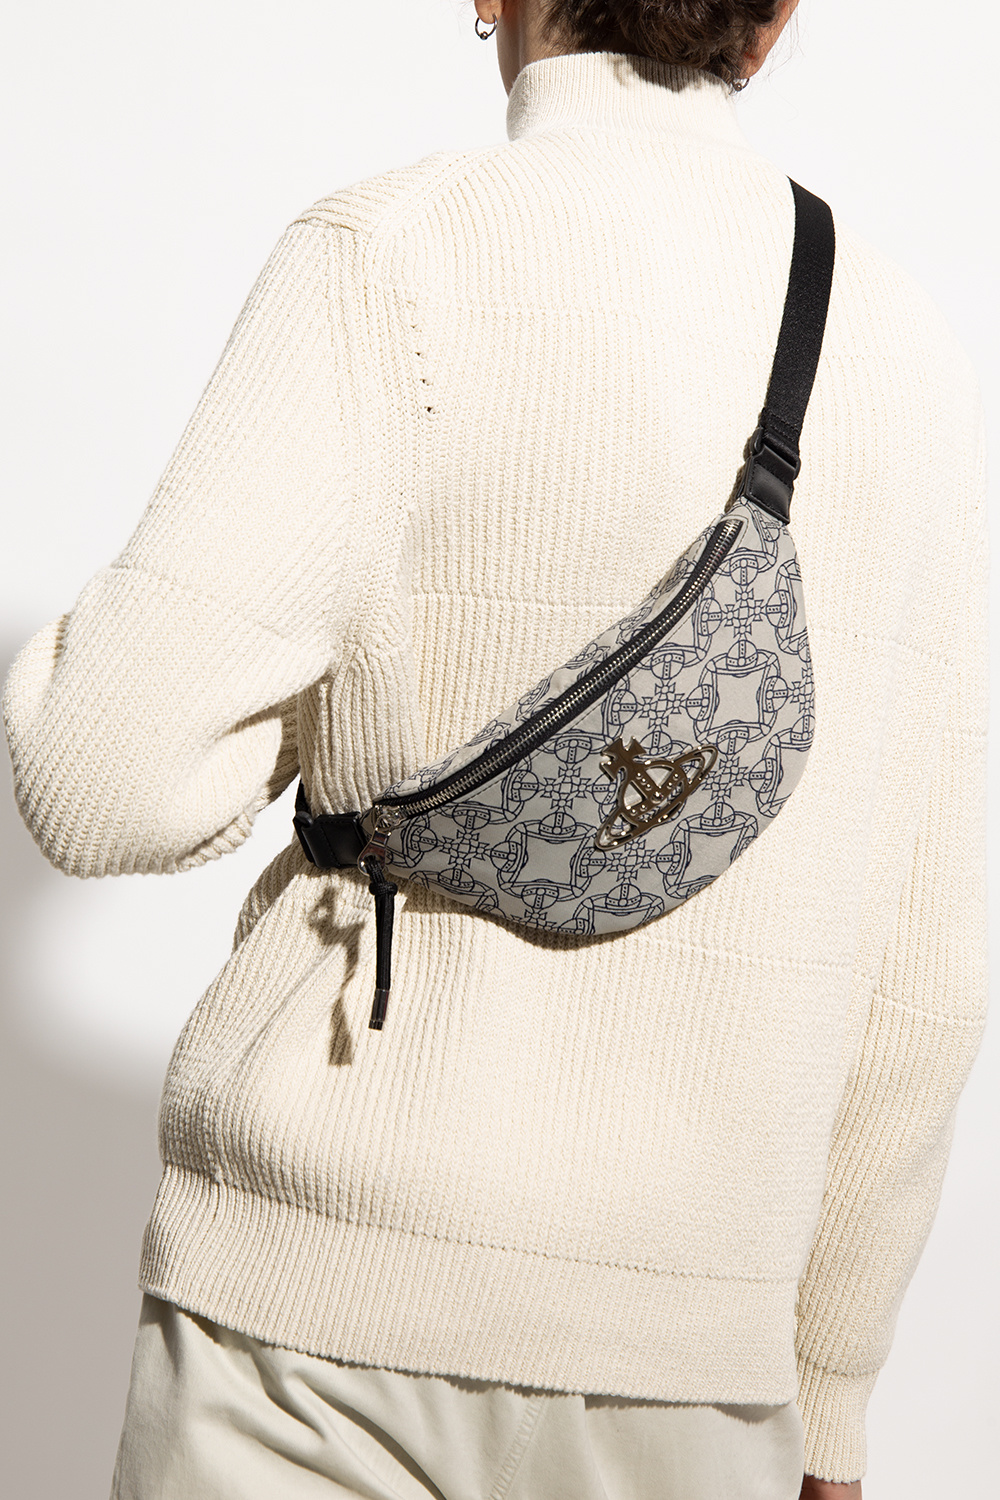 Vivienne Westwood ‘Hilda Small’ belt bag